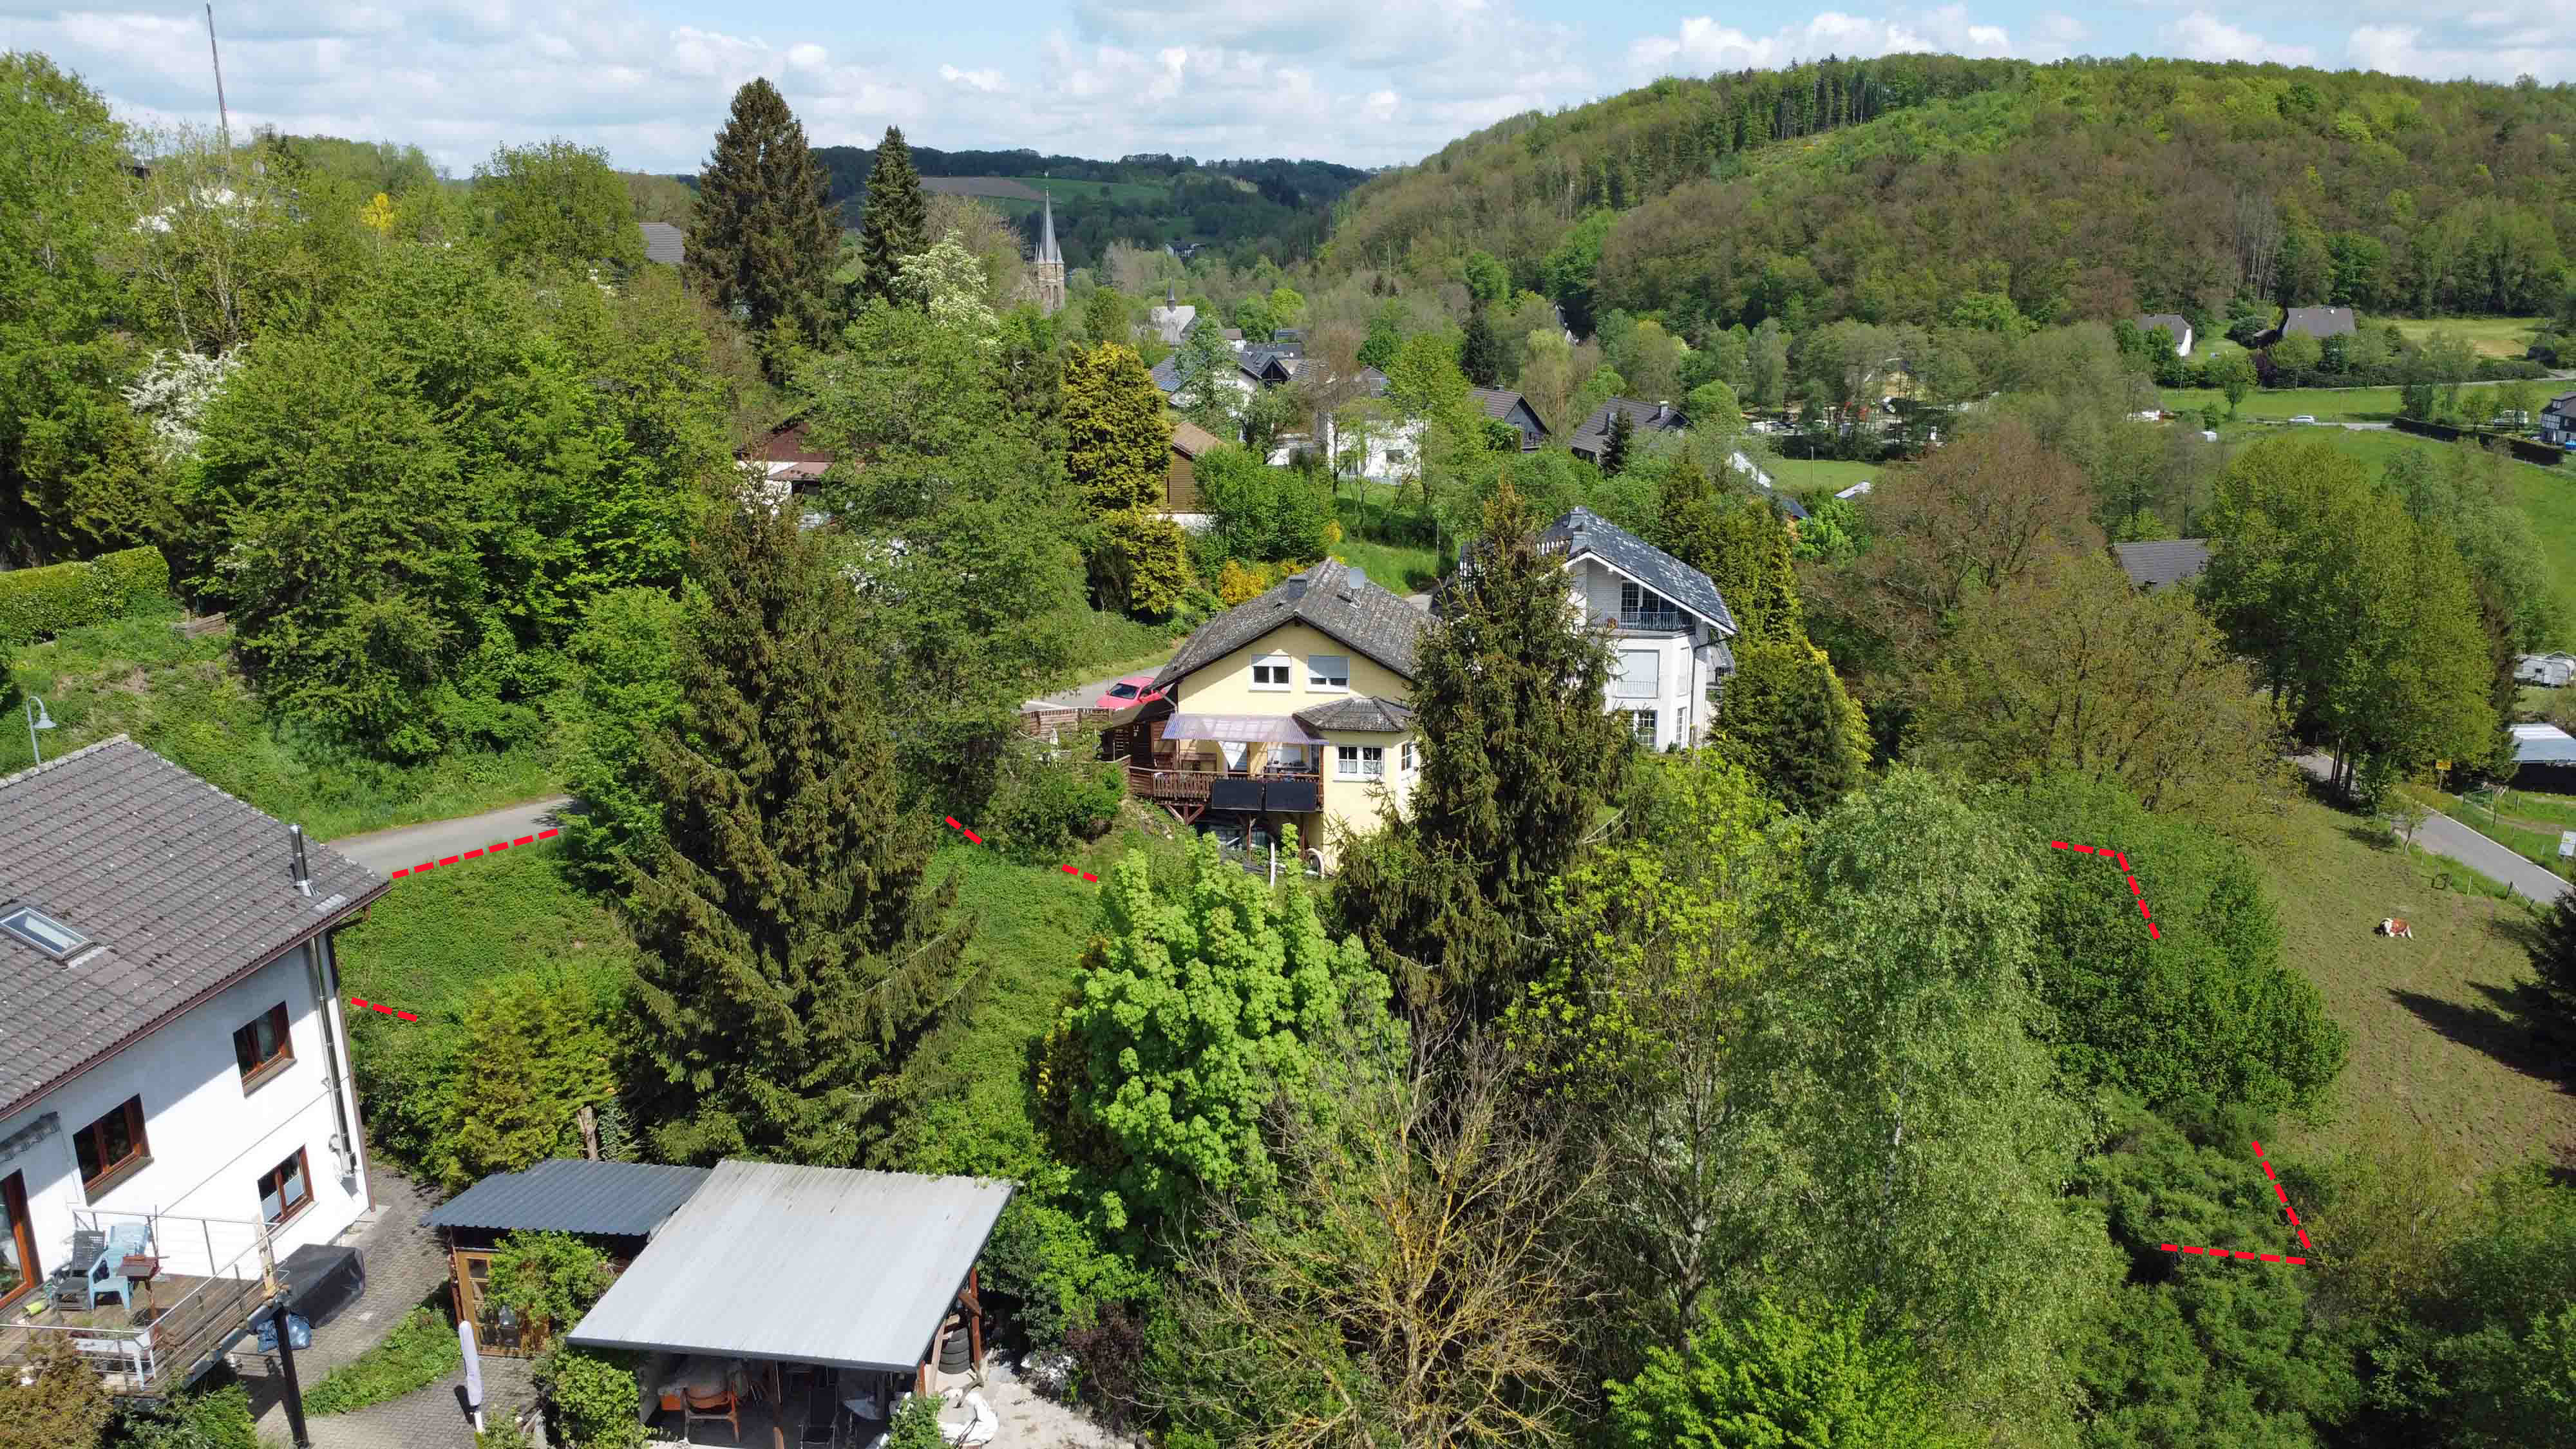 Morsbach-Holpe: Preiswertes, sofort bebaubares Baugrundstück in herrlicher Naturlage, 1.128 m² Baulücke